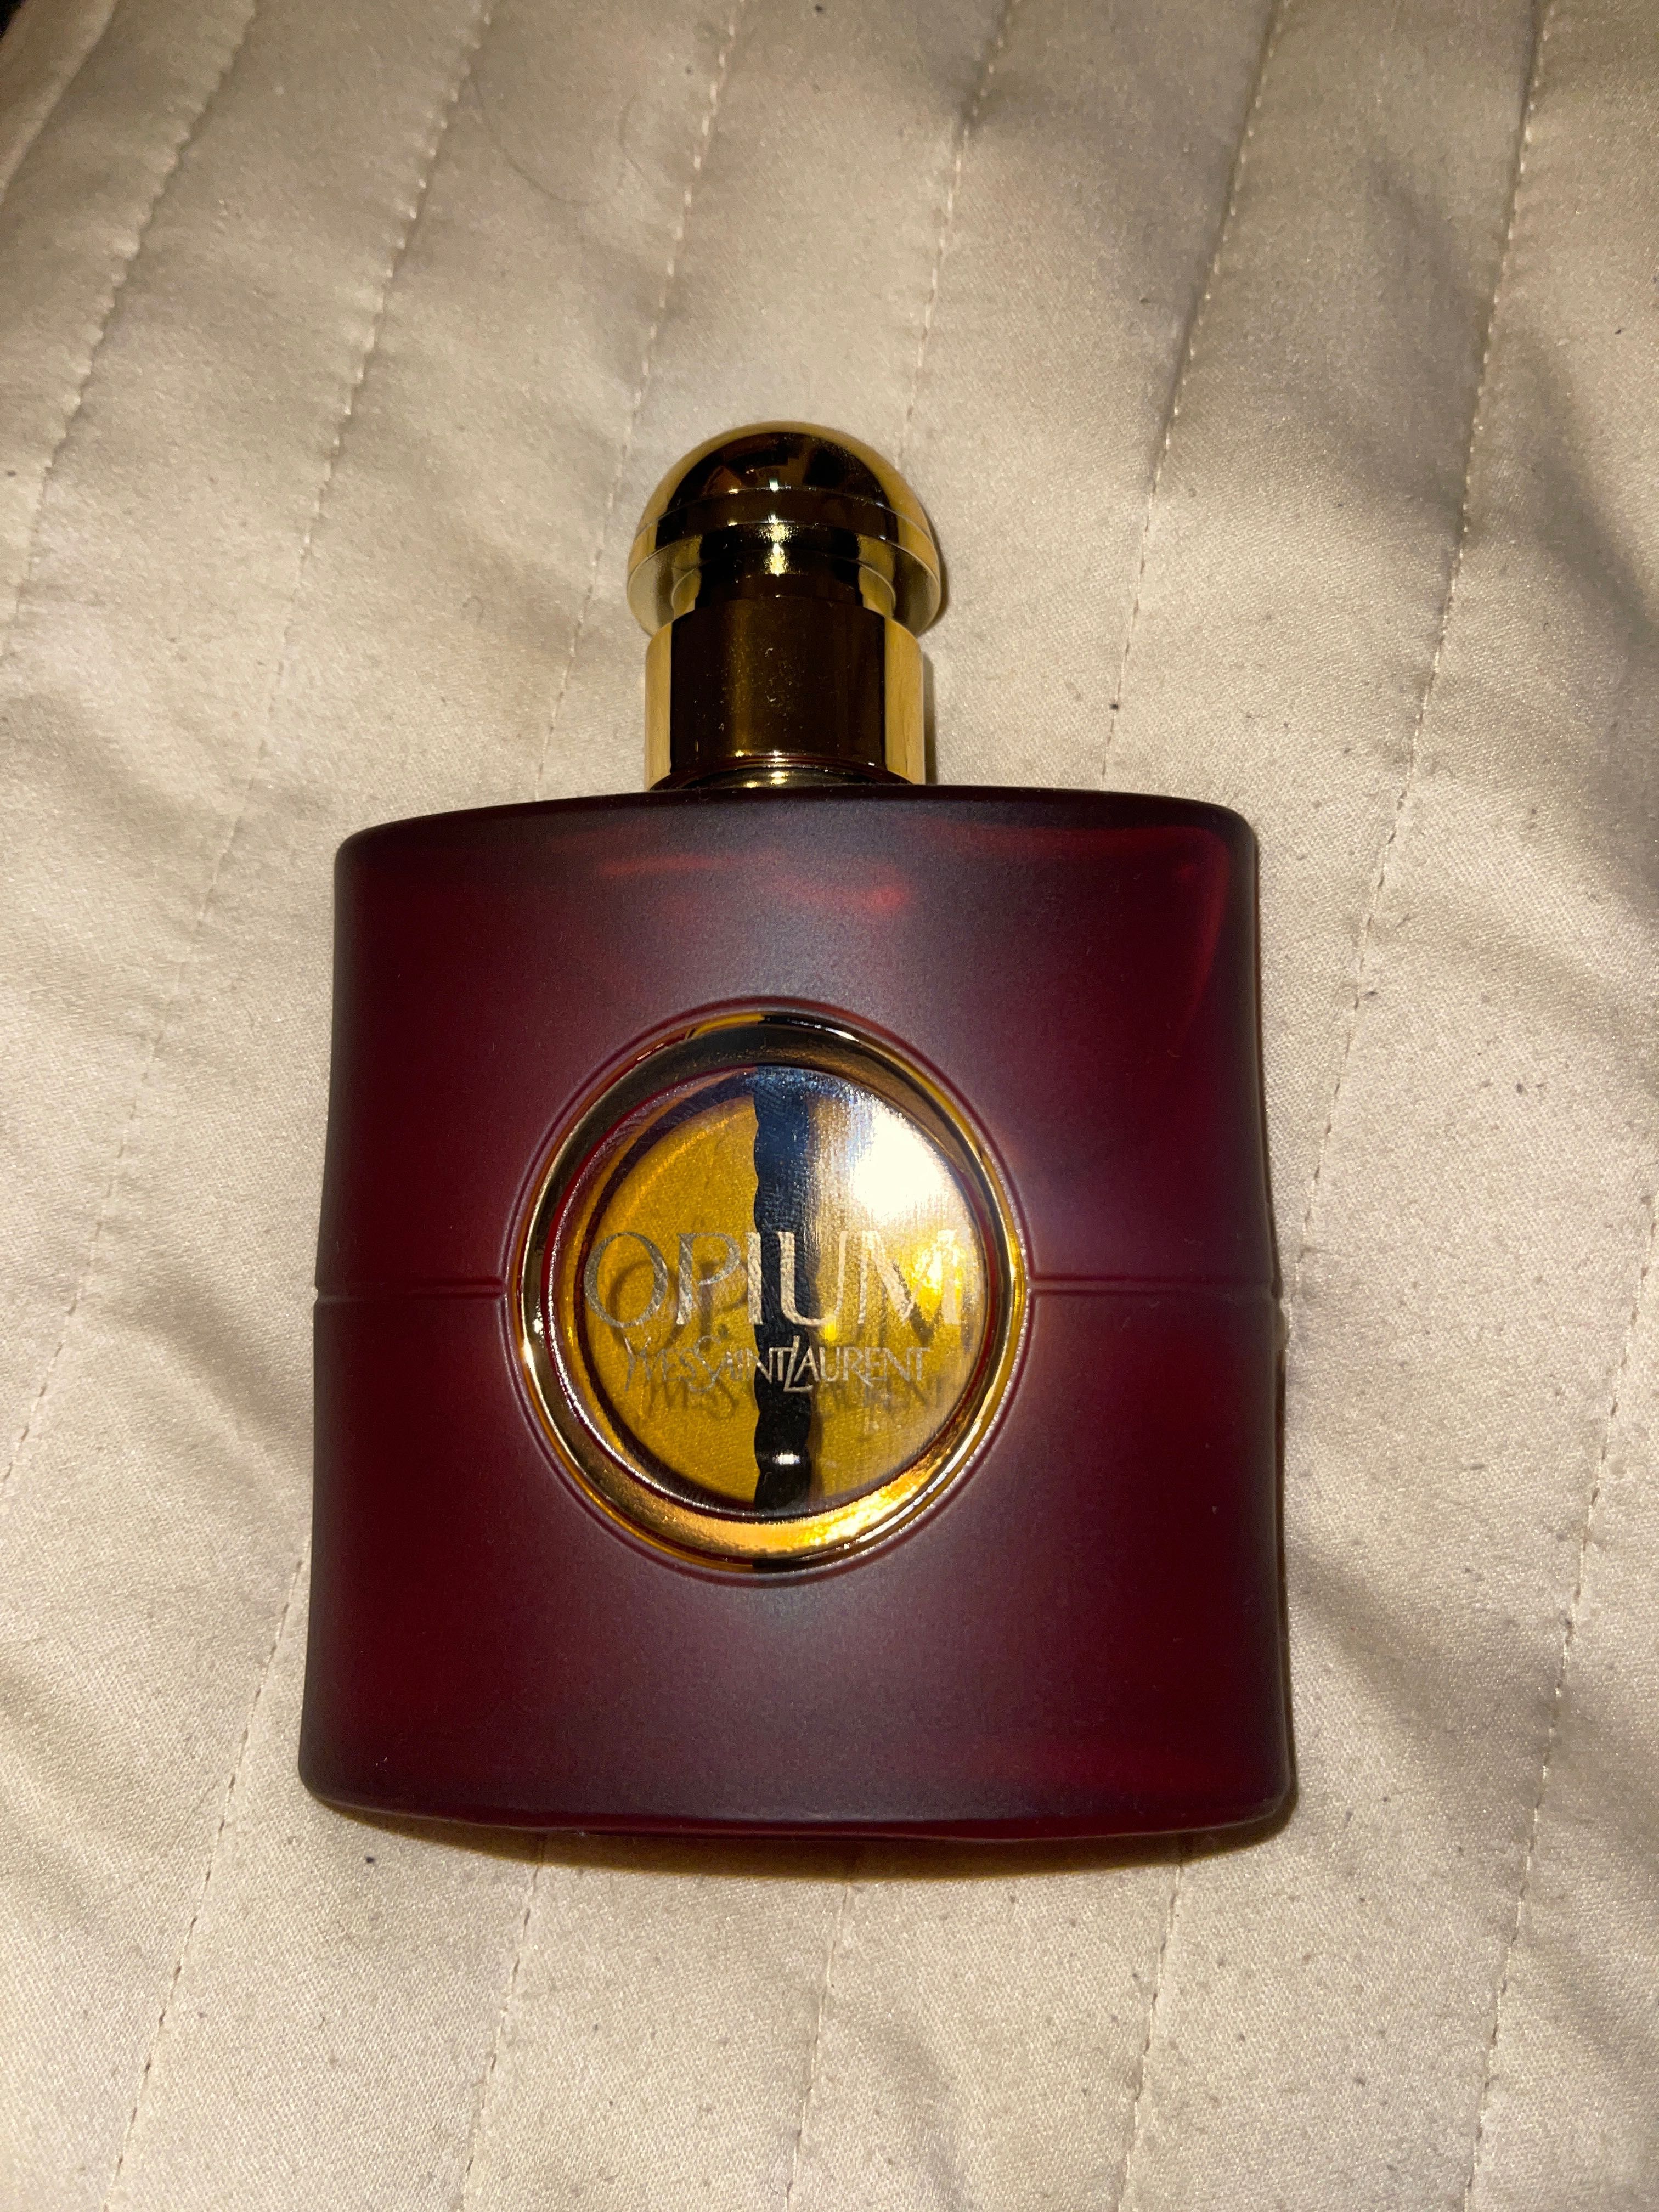 Yves Saint Laurent Opium Eau de Parfum apa parfum 50ml